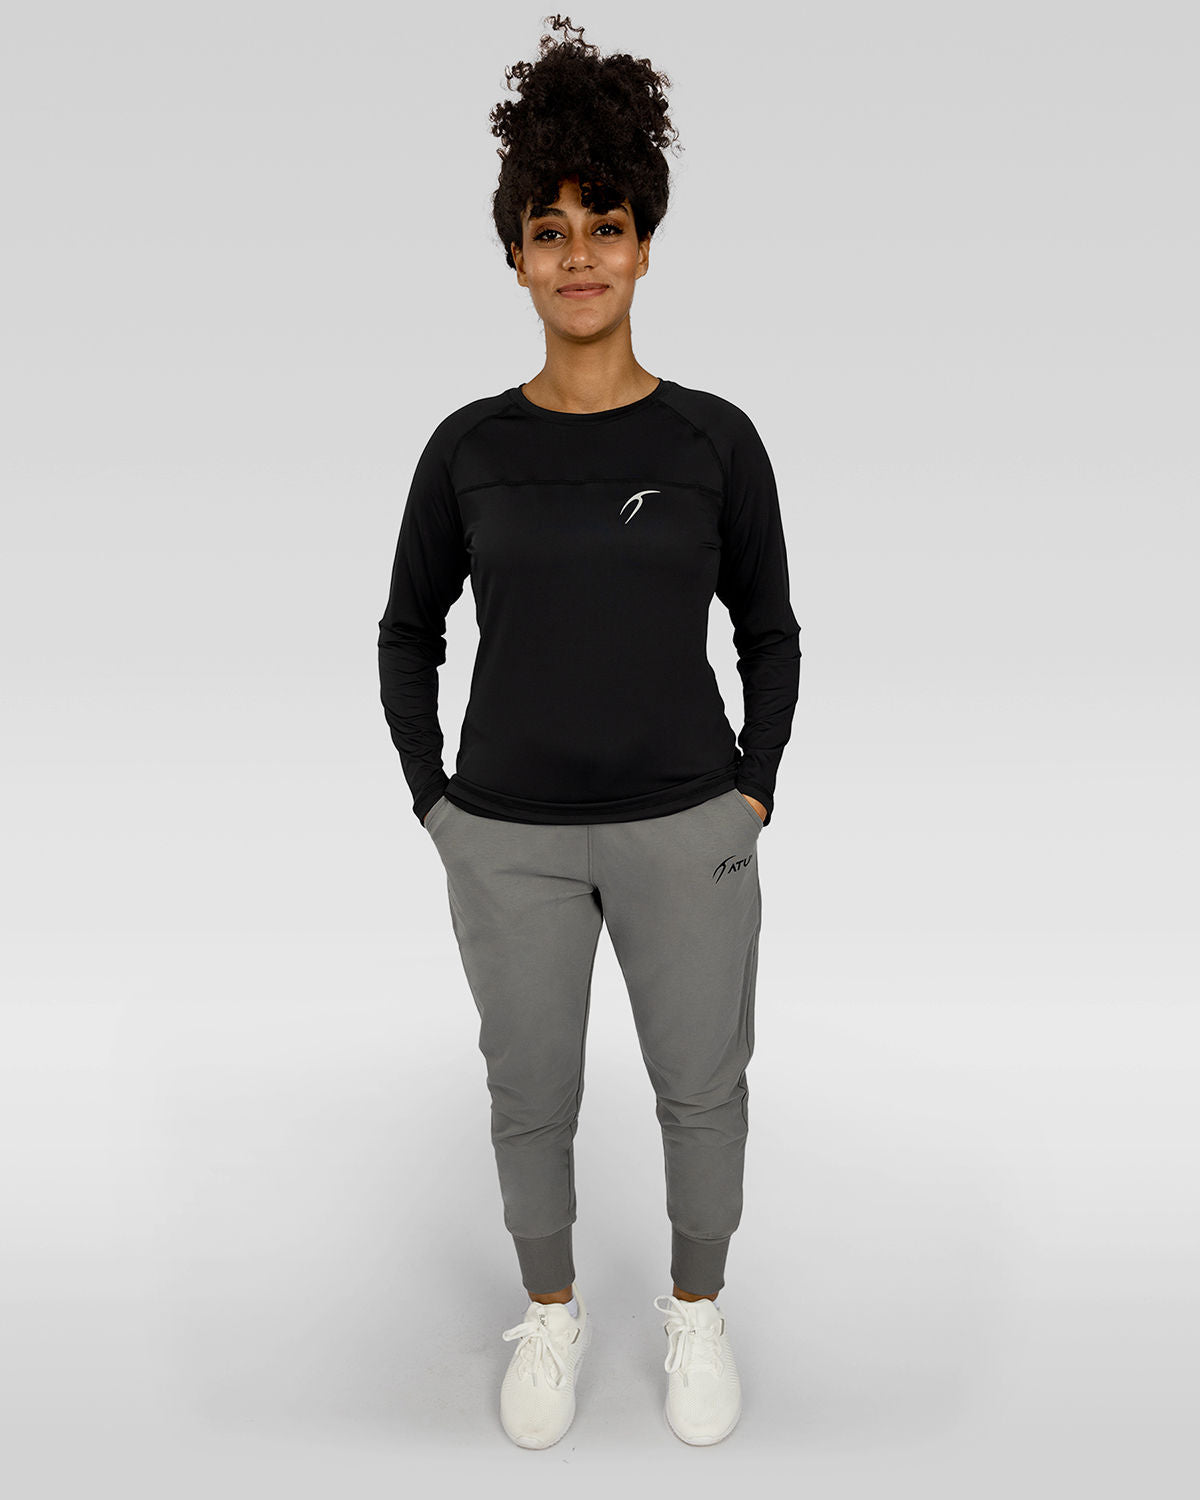 Photo by ð—”ð—§ð—¨ð— SPORTSWEAR Â® on December 20, 2022. May be an image of 1 woman wear black training t-shirt, gray sweatpants and white shoes.